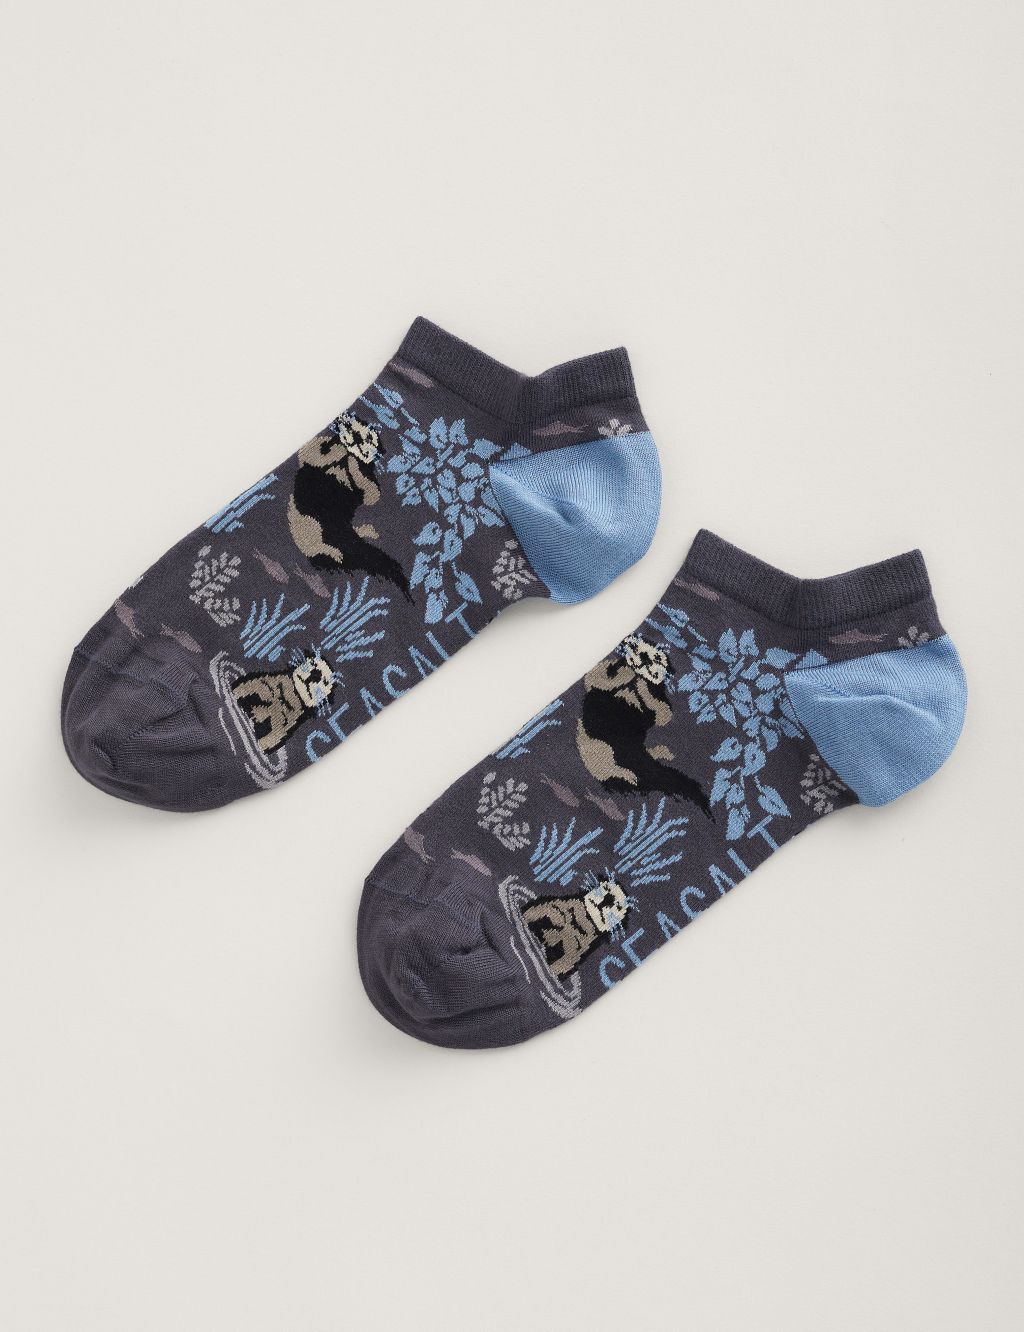 Otter Pattern Trainer Socks